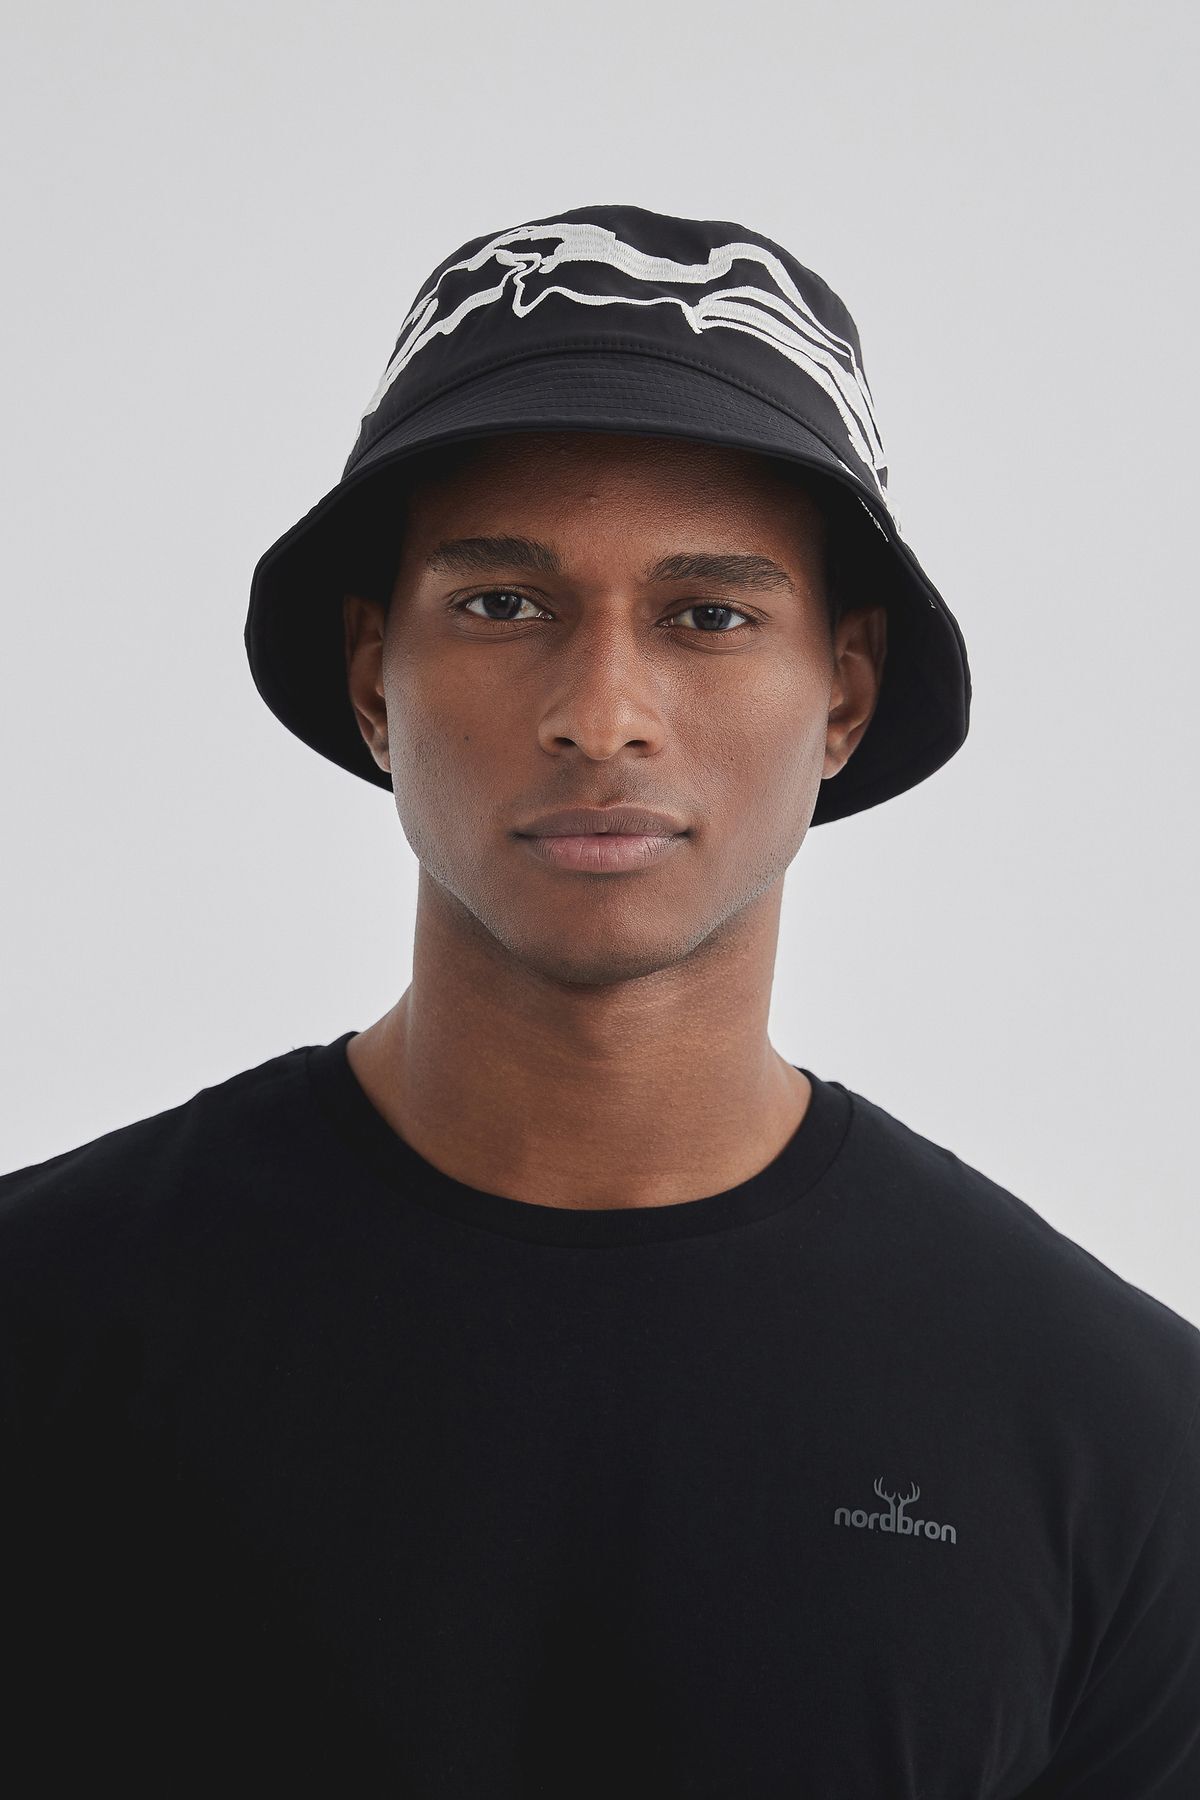 Nordbron Unisex Siyah İnce Nakış Detaylı Terletmez İç Astarlı Kova Bucket Şapka Geniş Basic Dropbark